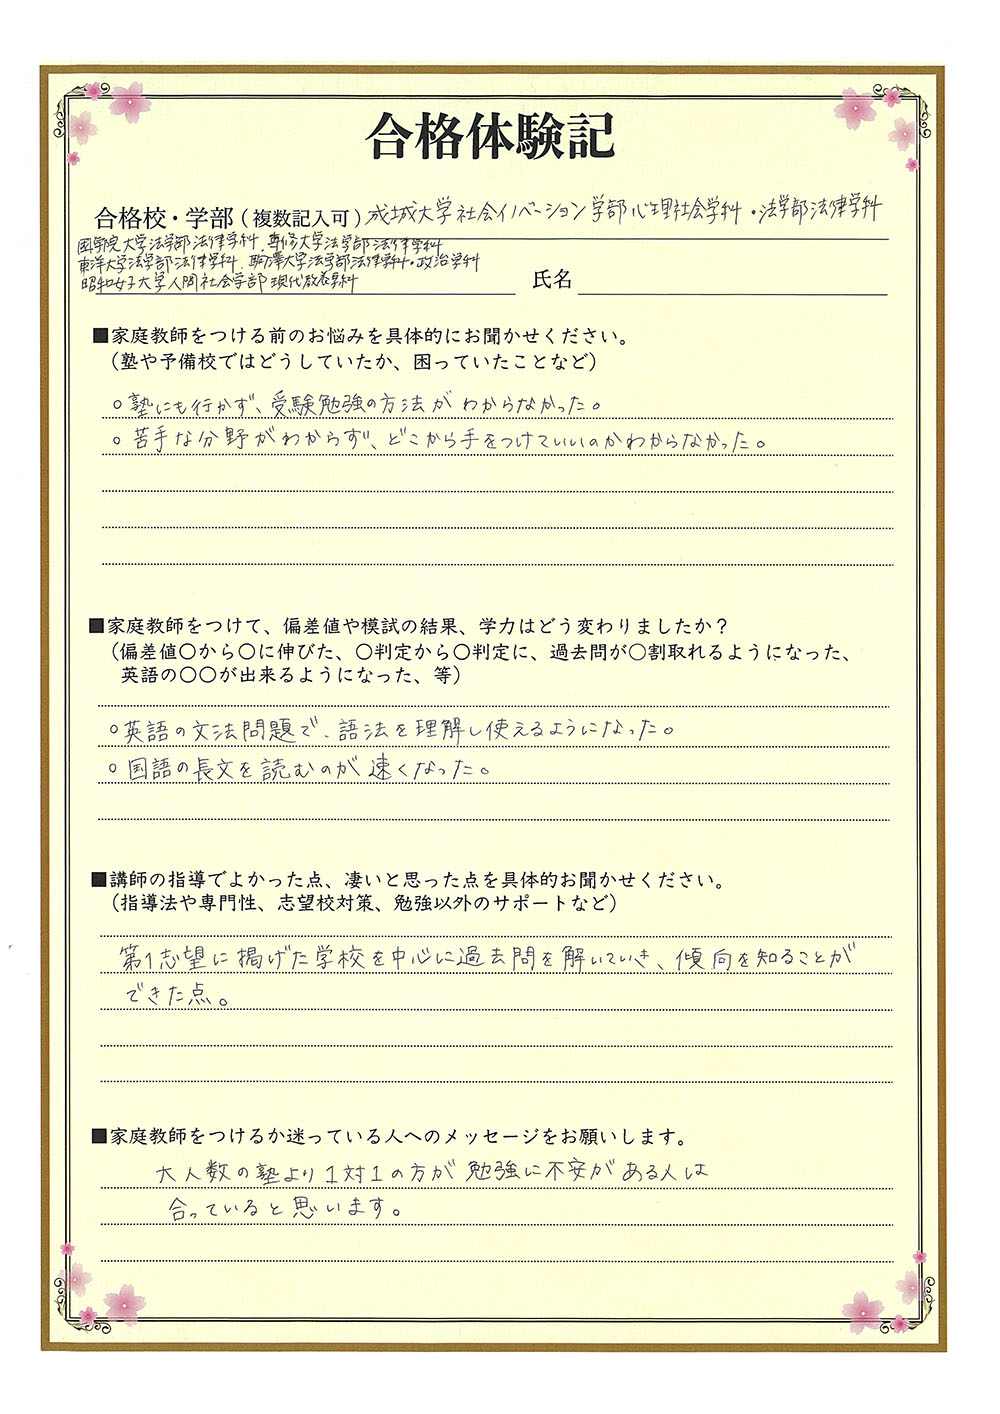 駒澤大学に合格する方法 入試科目別22年対策 オンラインプロ教師 メガスタ高校生